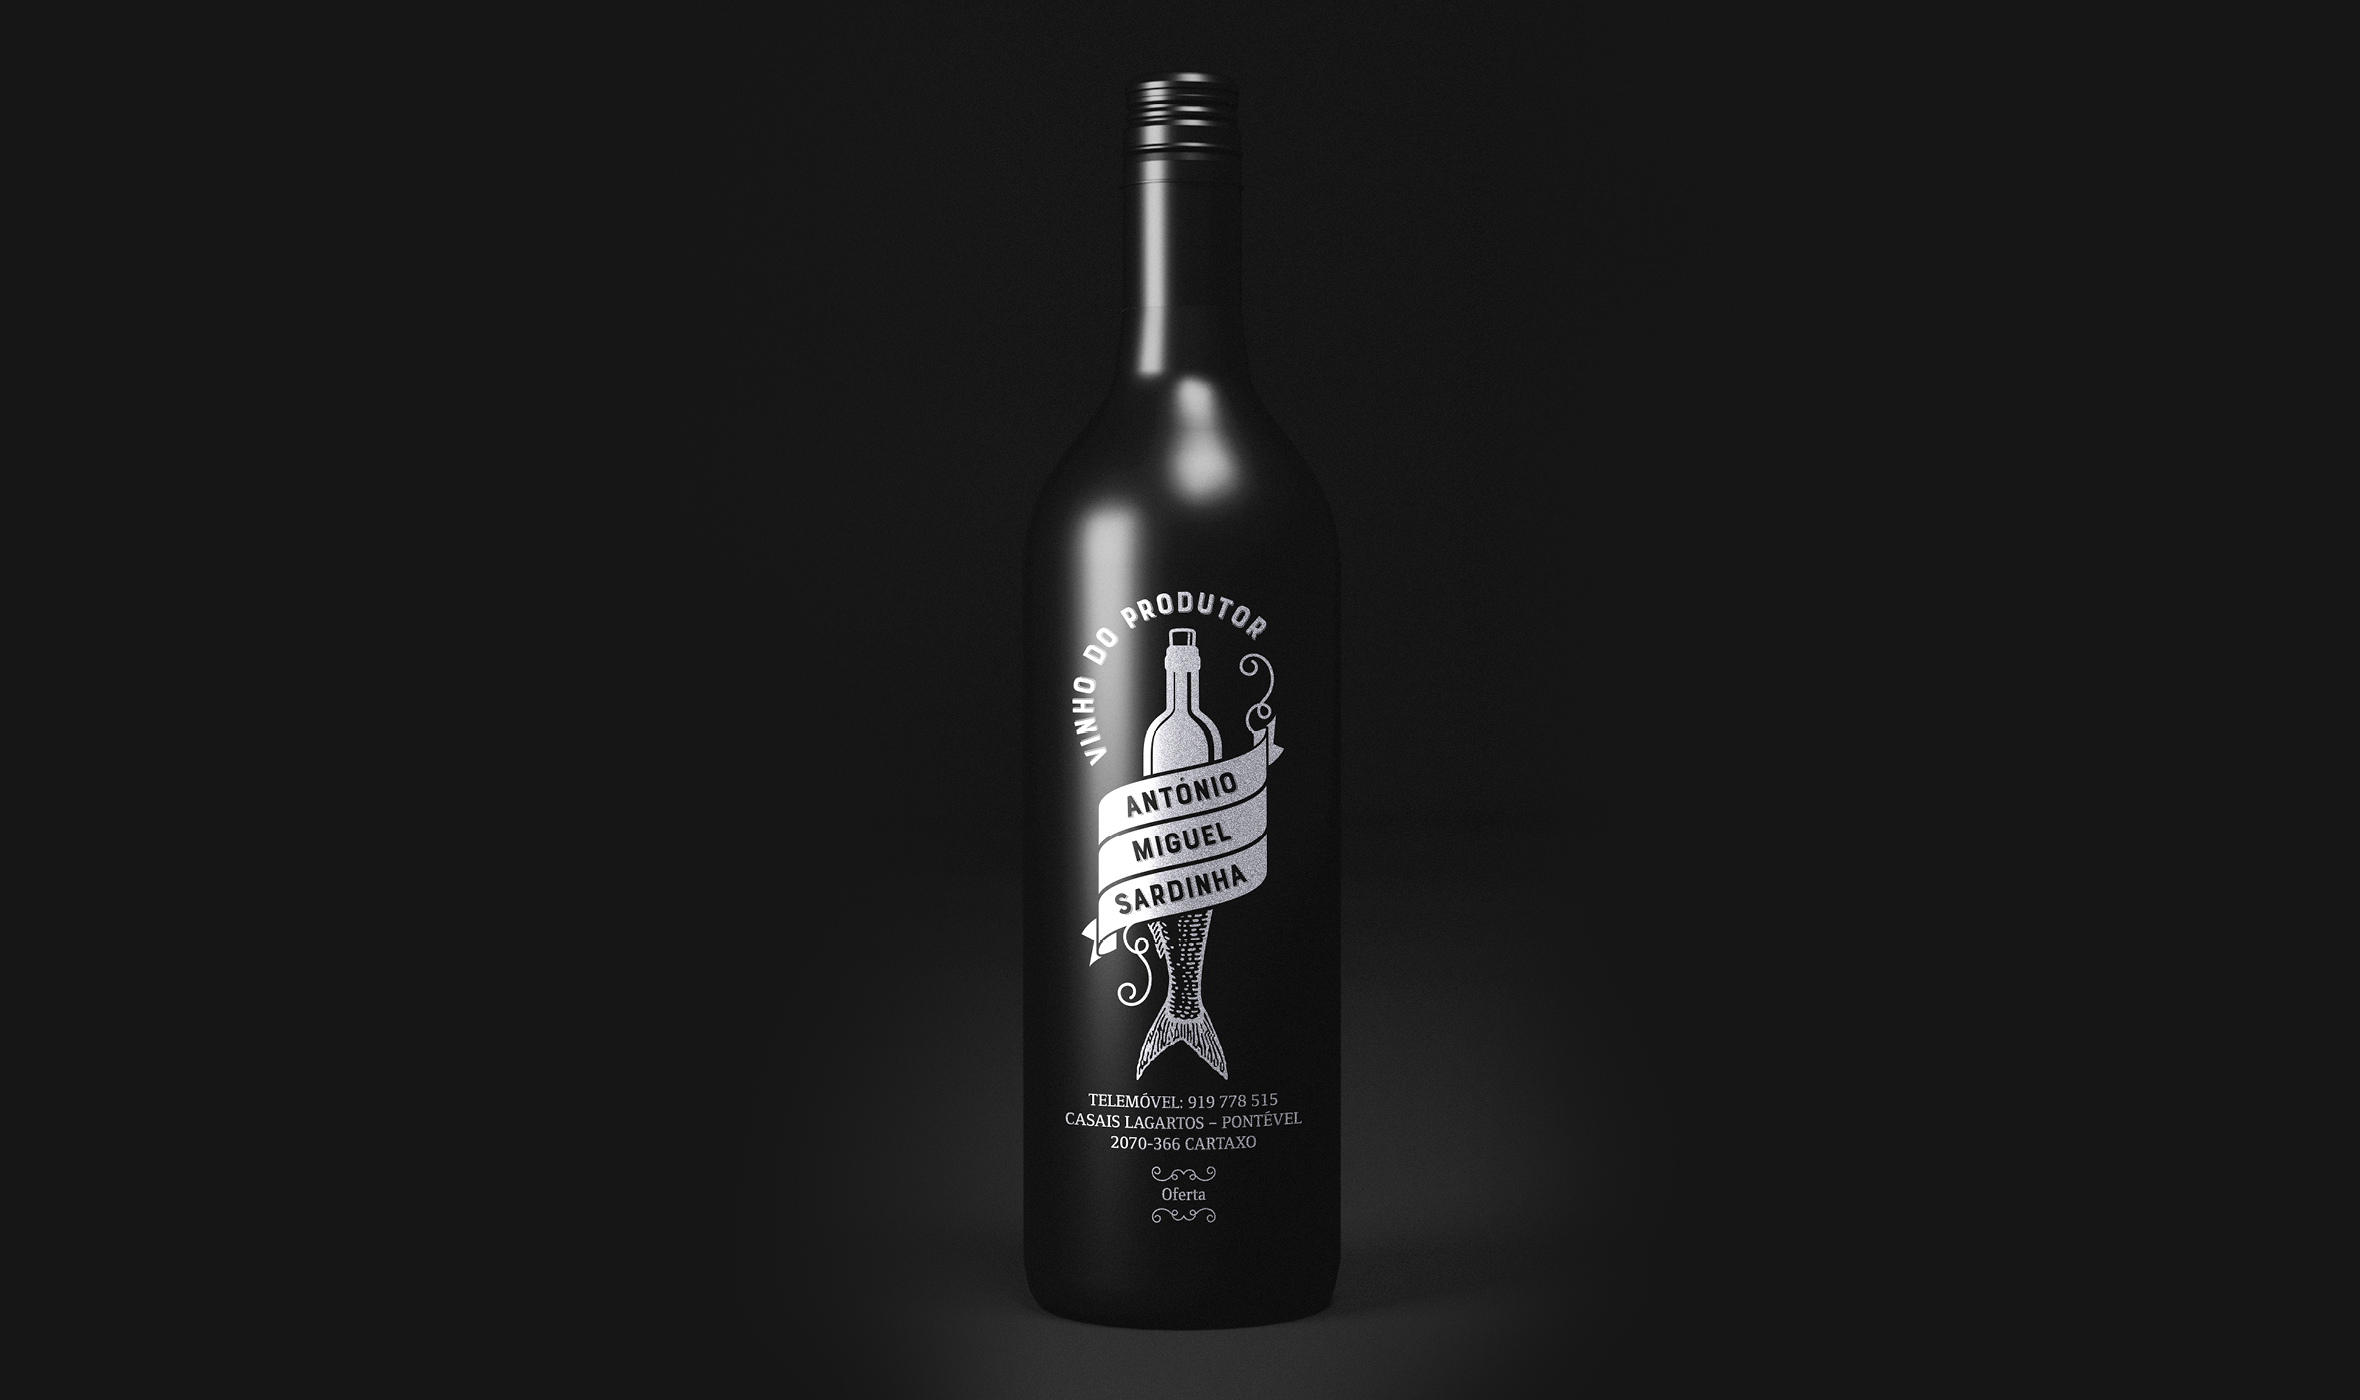 António Miguel Sardinha Wein Logoentwicklung / Corporate Design Verpackung, Packaging Rotwein Black Bottle